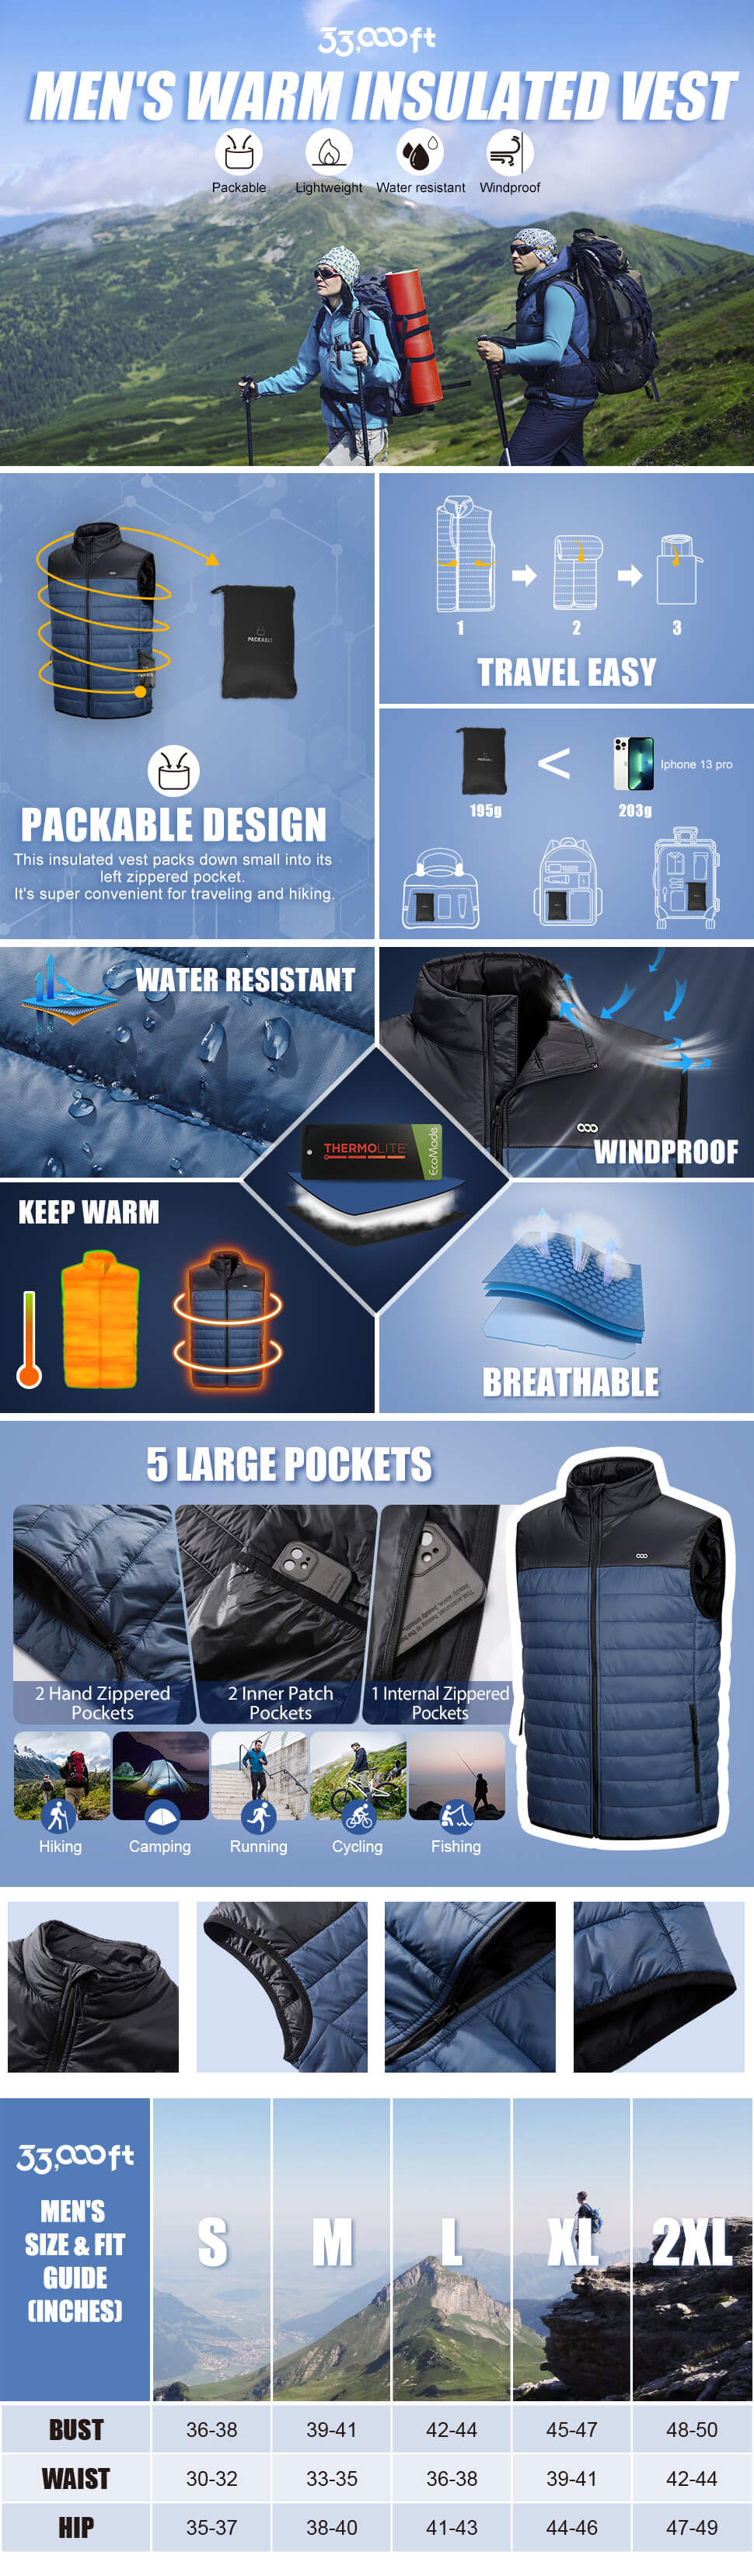 Men's Lightweight Packable Insulated Puffer Vest Outerwear, Warm Winter Sleeveless Jacket for Golf Running